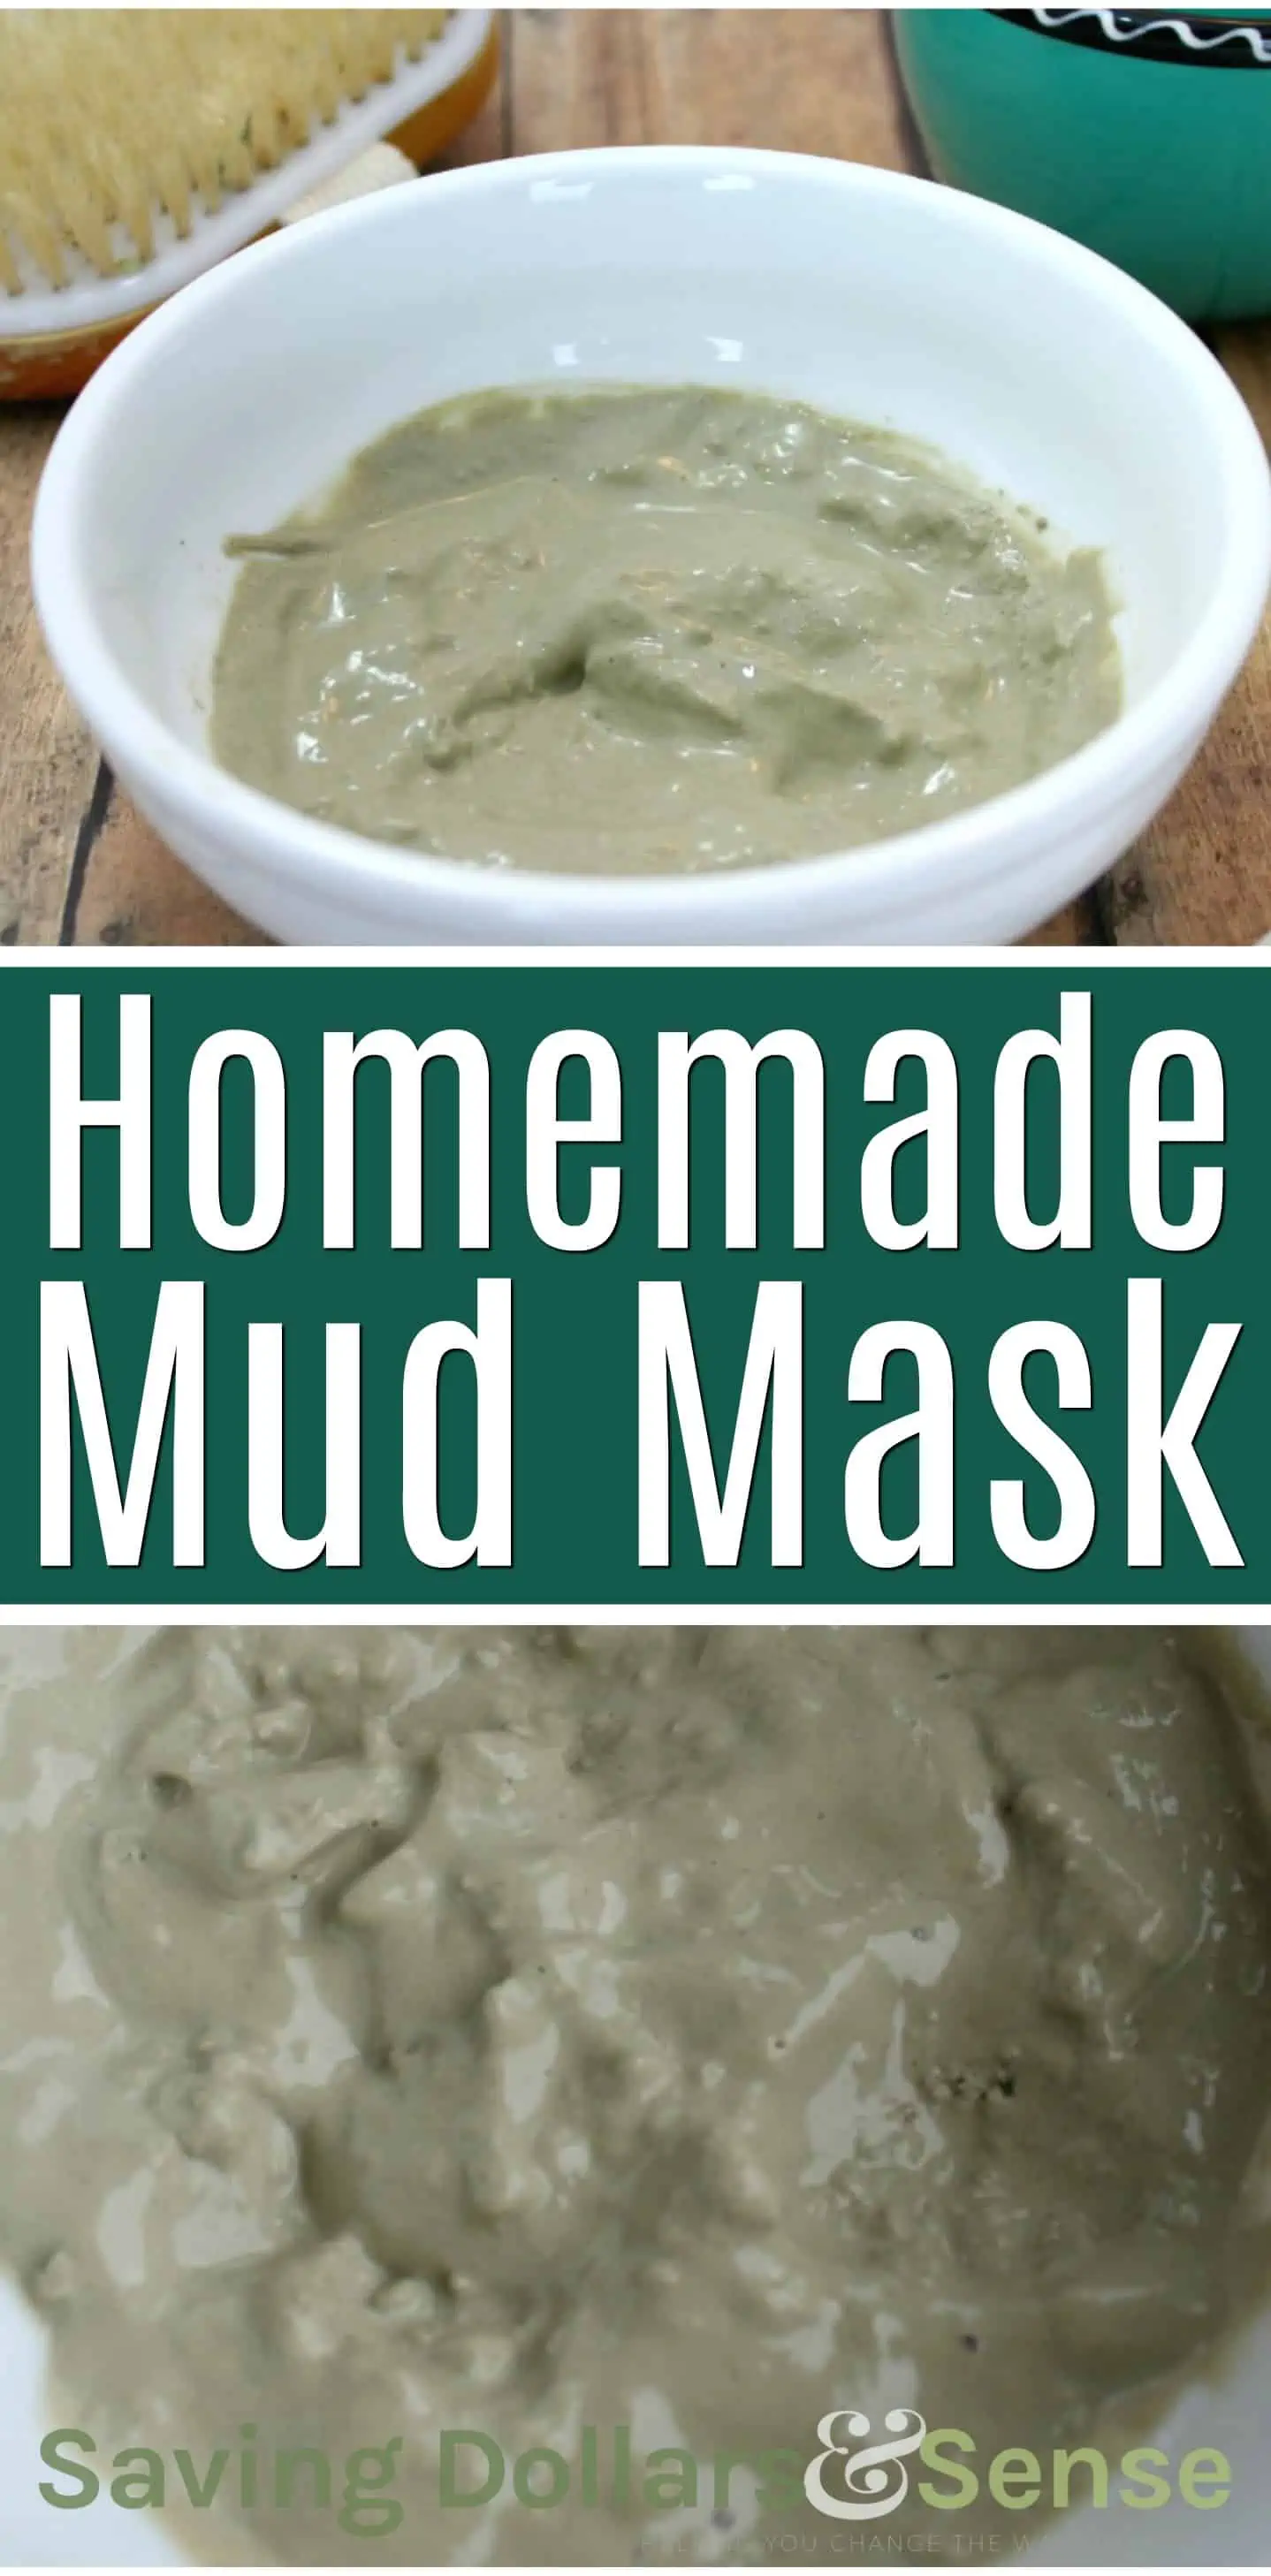 Homemade Mud Mask Recipe